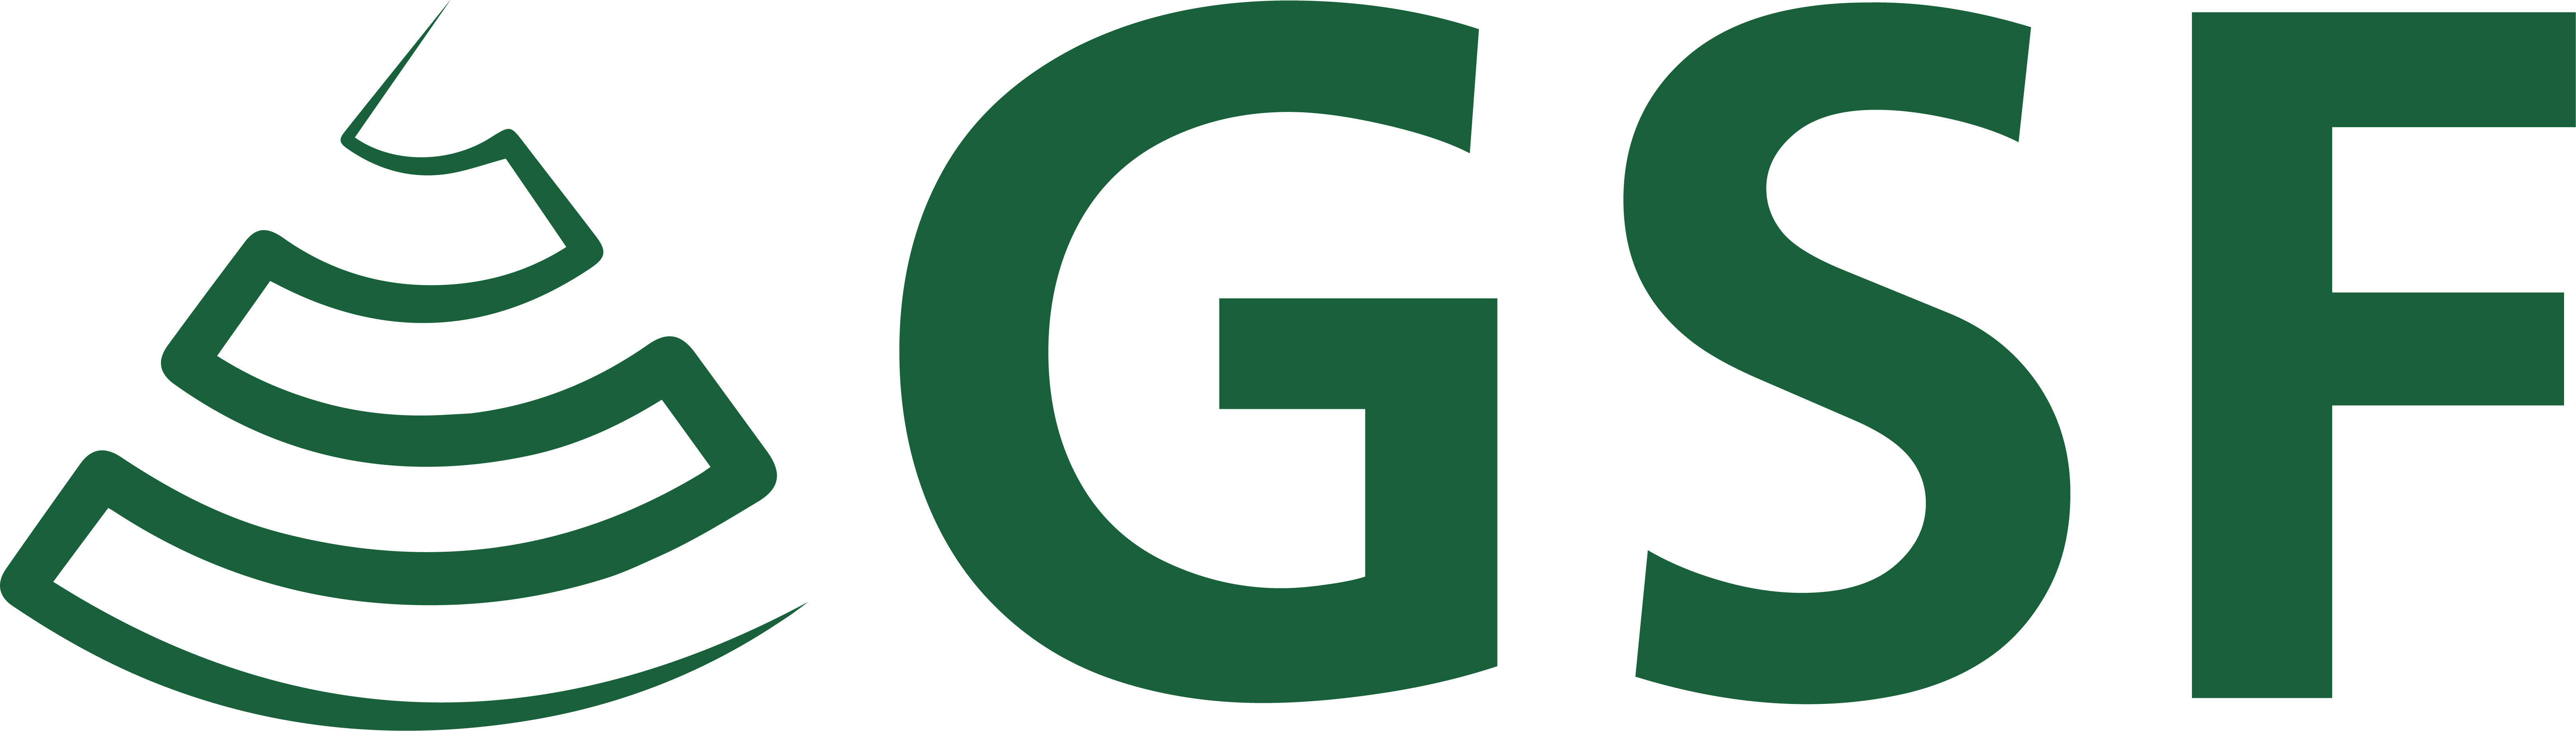 GSF Logo